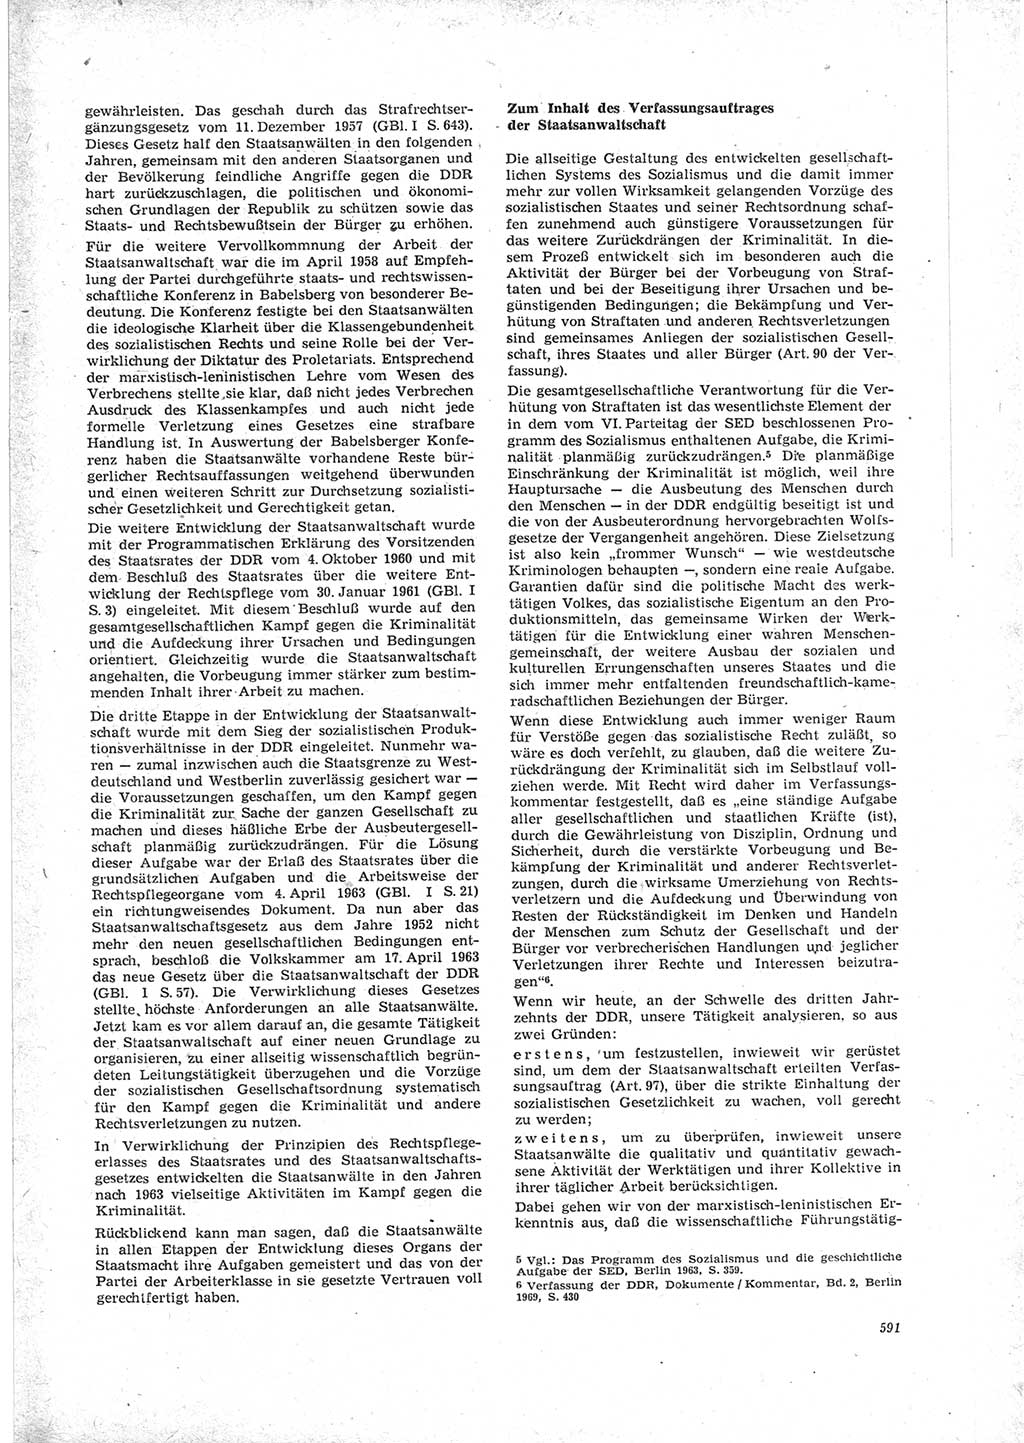 Neue Justiz (NJ), Zeitschrift für Recht und Rechtswissenschaft [Deutsche Demokratische Republik (DDR)], 23. Jahrgang 1969, Seite 591 (NJ DDR 1969, S. 591)